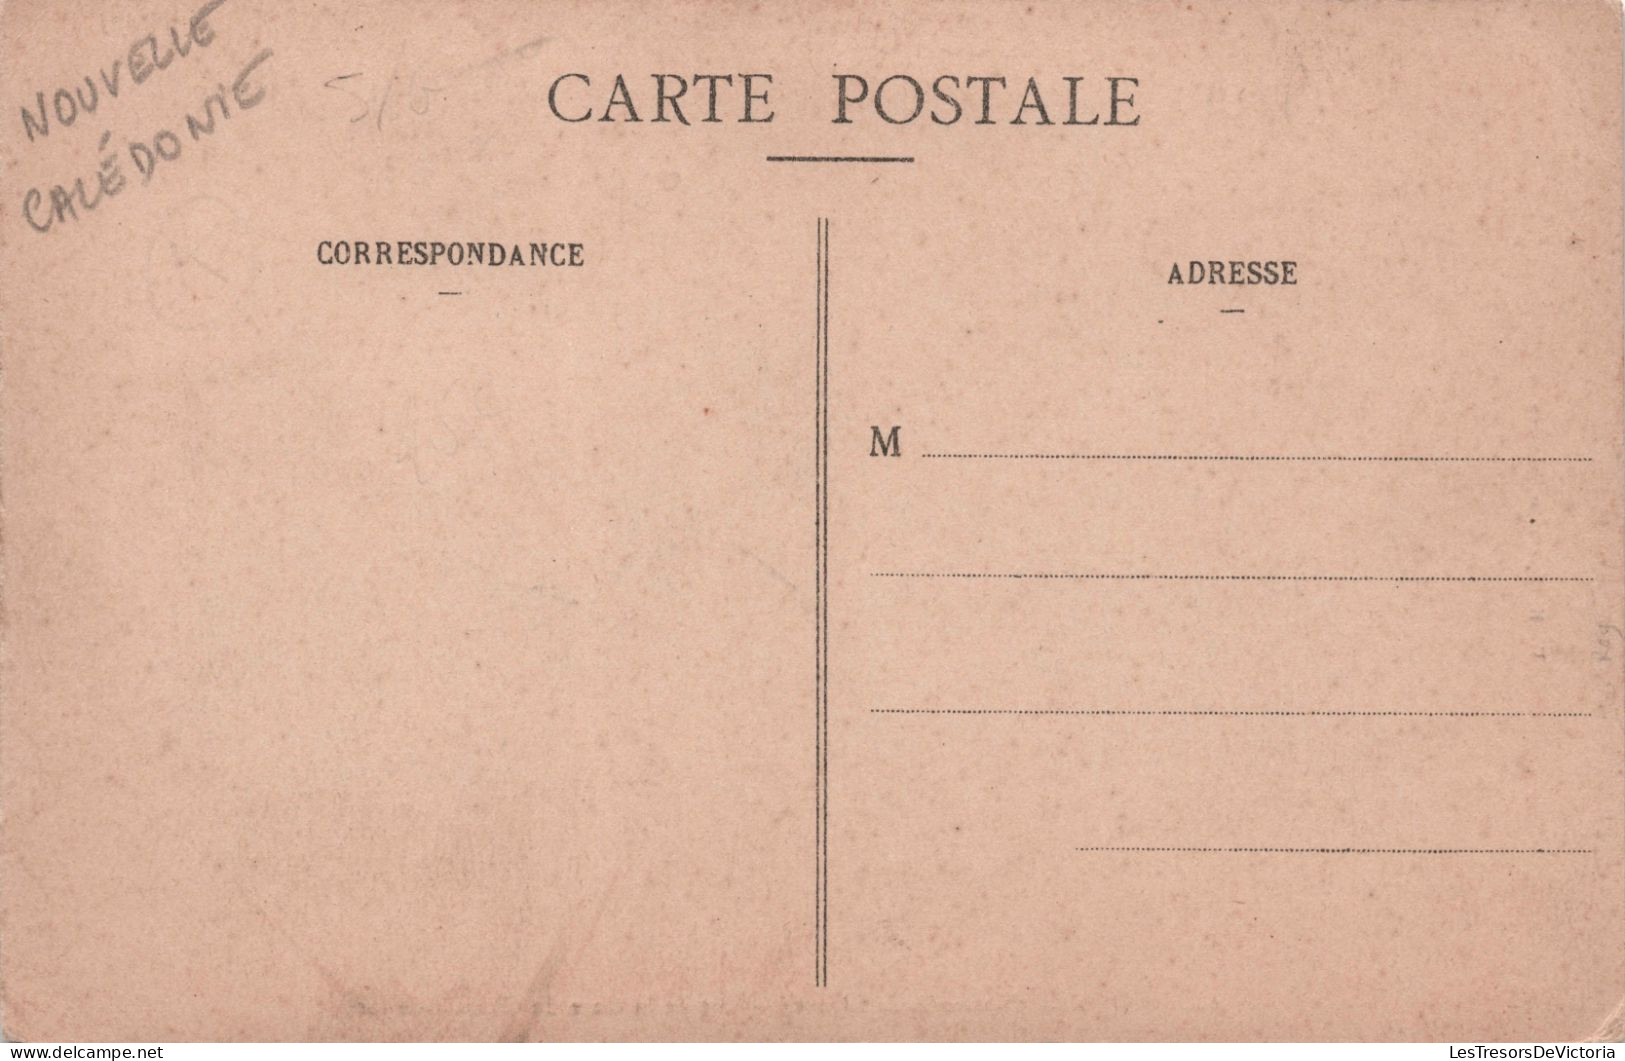 NOUVELLE CALEDONIE - Nouméa - Vue De La Gare Du Chemin De Fer - W H C Editeur - Carte Postale Ancienne - Nueva Caledonia